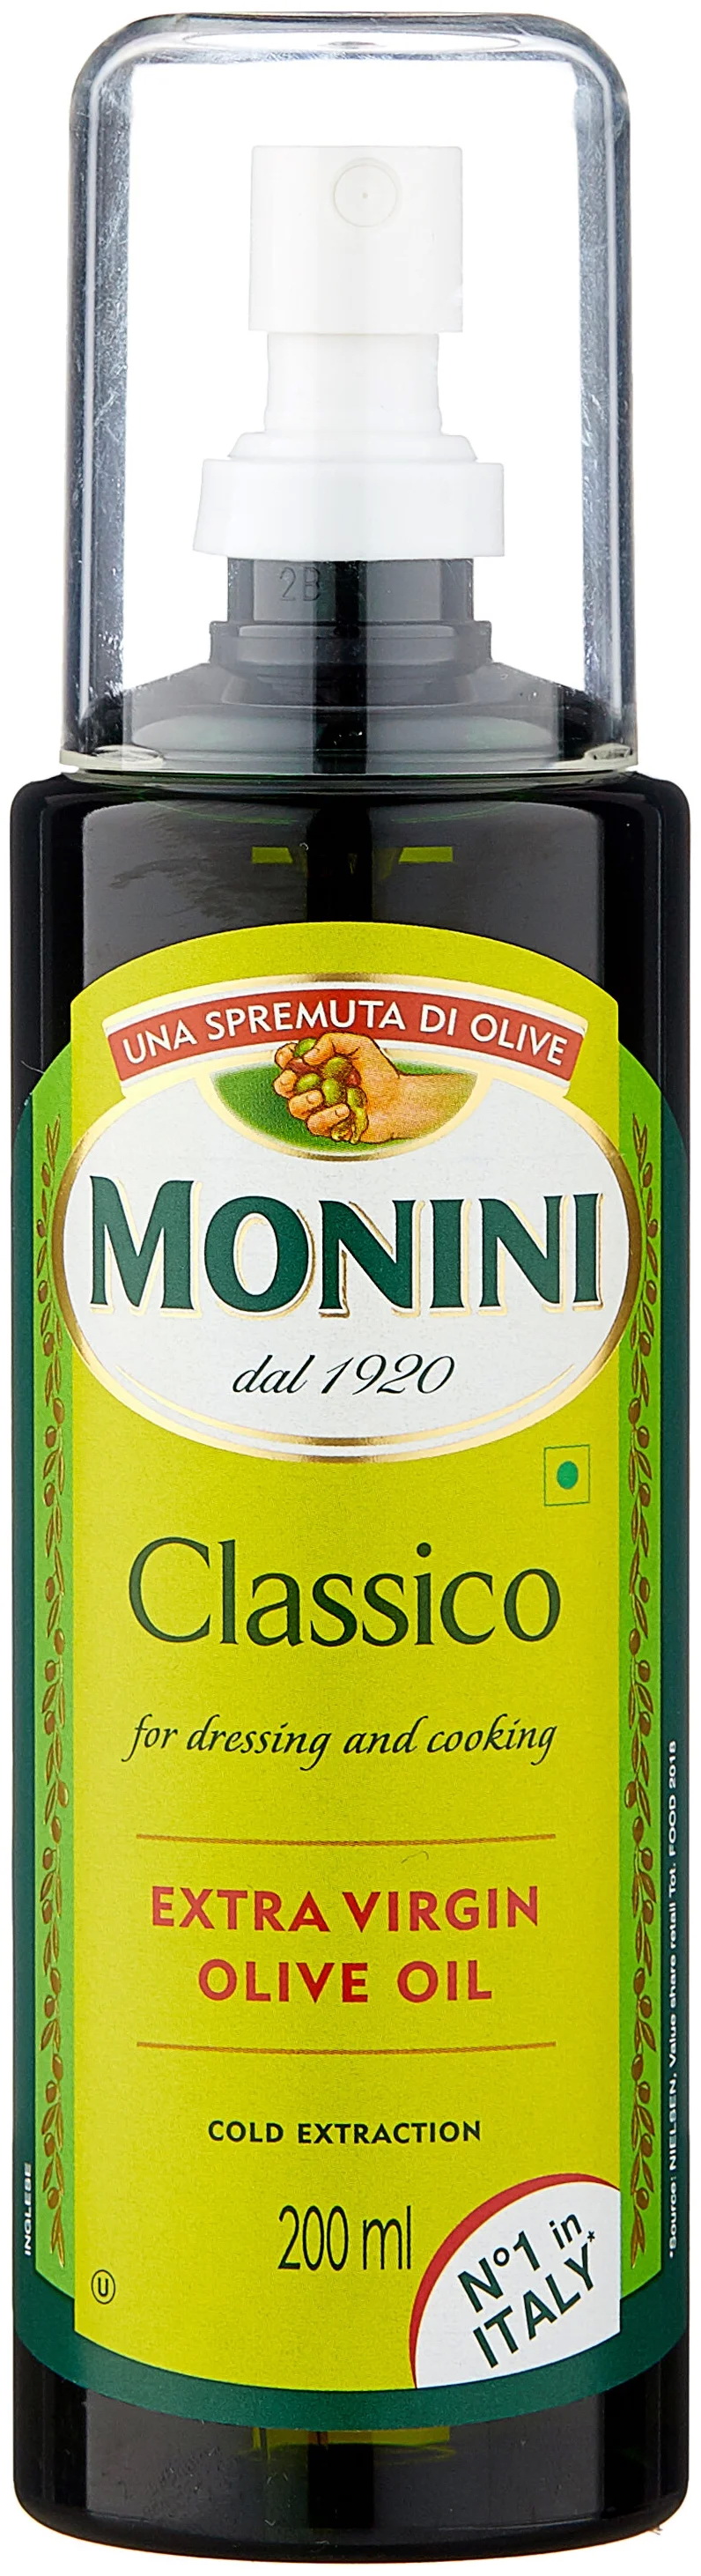 Масло оливковое monini classico. Масло оливковое Monini Classico Extra Virgin. Масло олив Monini ev Classico 500мл. Monini масло оливковое Classico, пластиковая бутылка. Monini масло оливковое Classico, пластиковая бутылка-спрей.